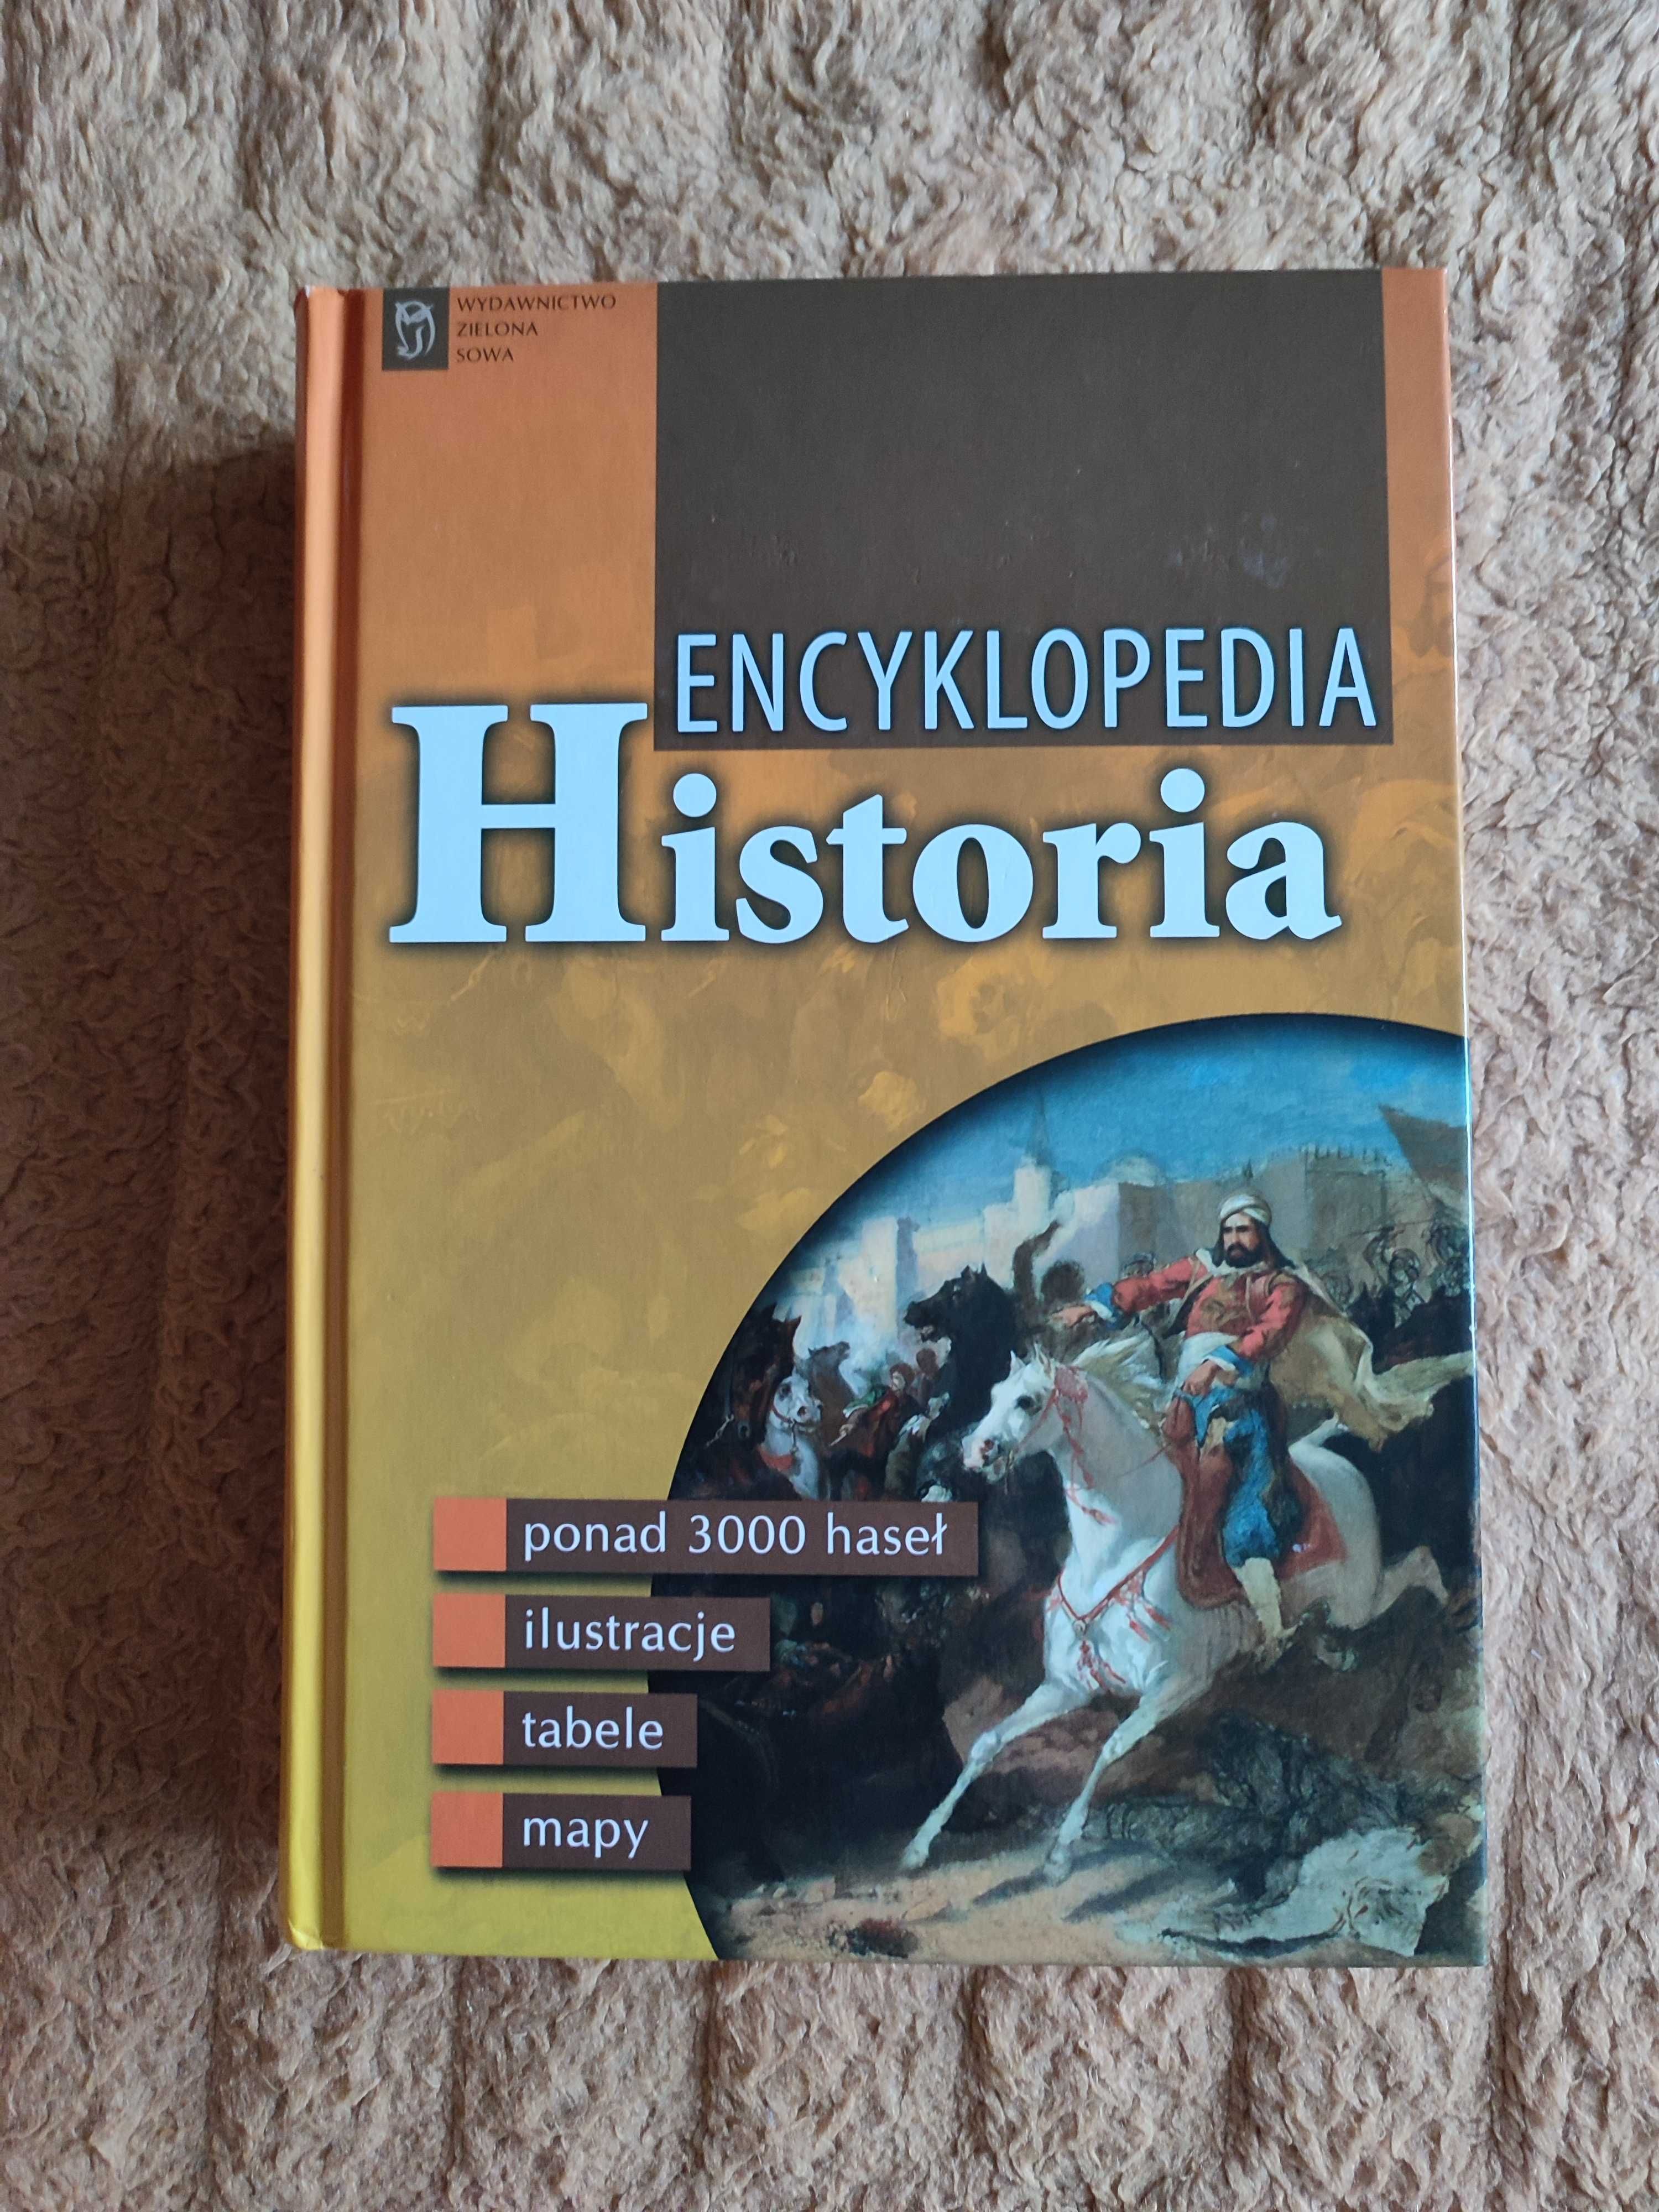 Encyklopedia Historia Wydawnictwo Zielona Sowa NOWA szkoła egzamin